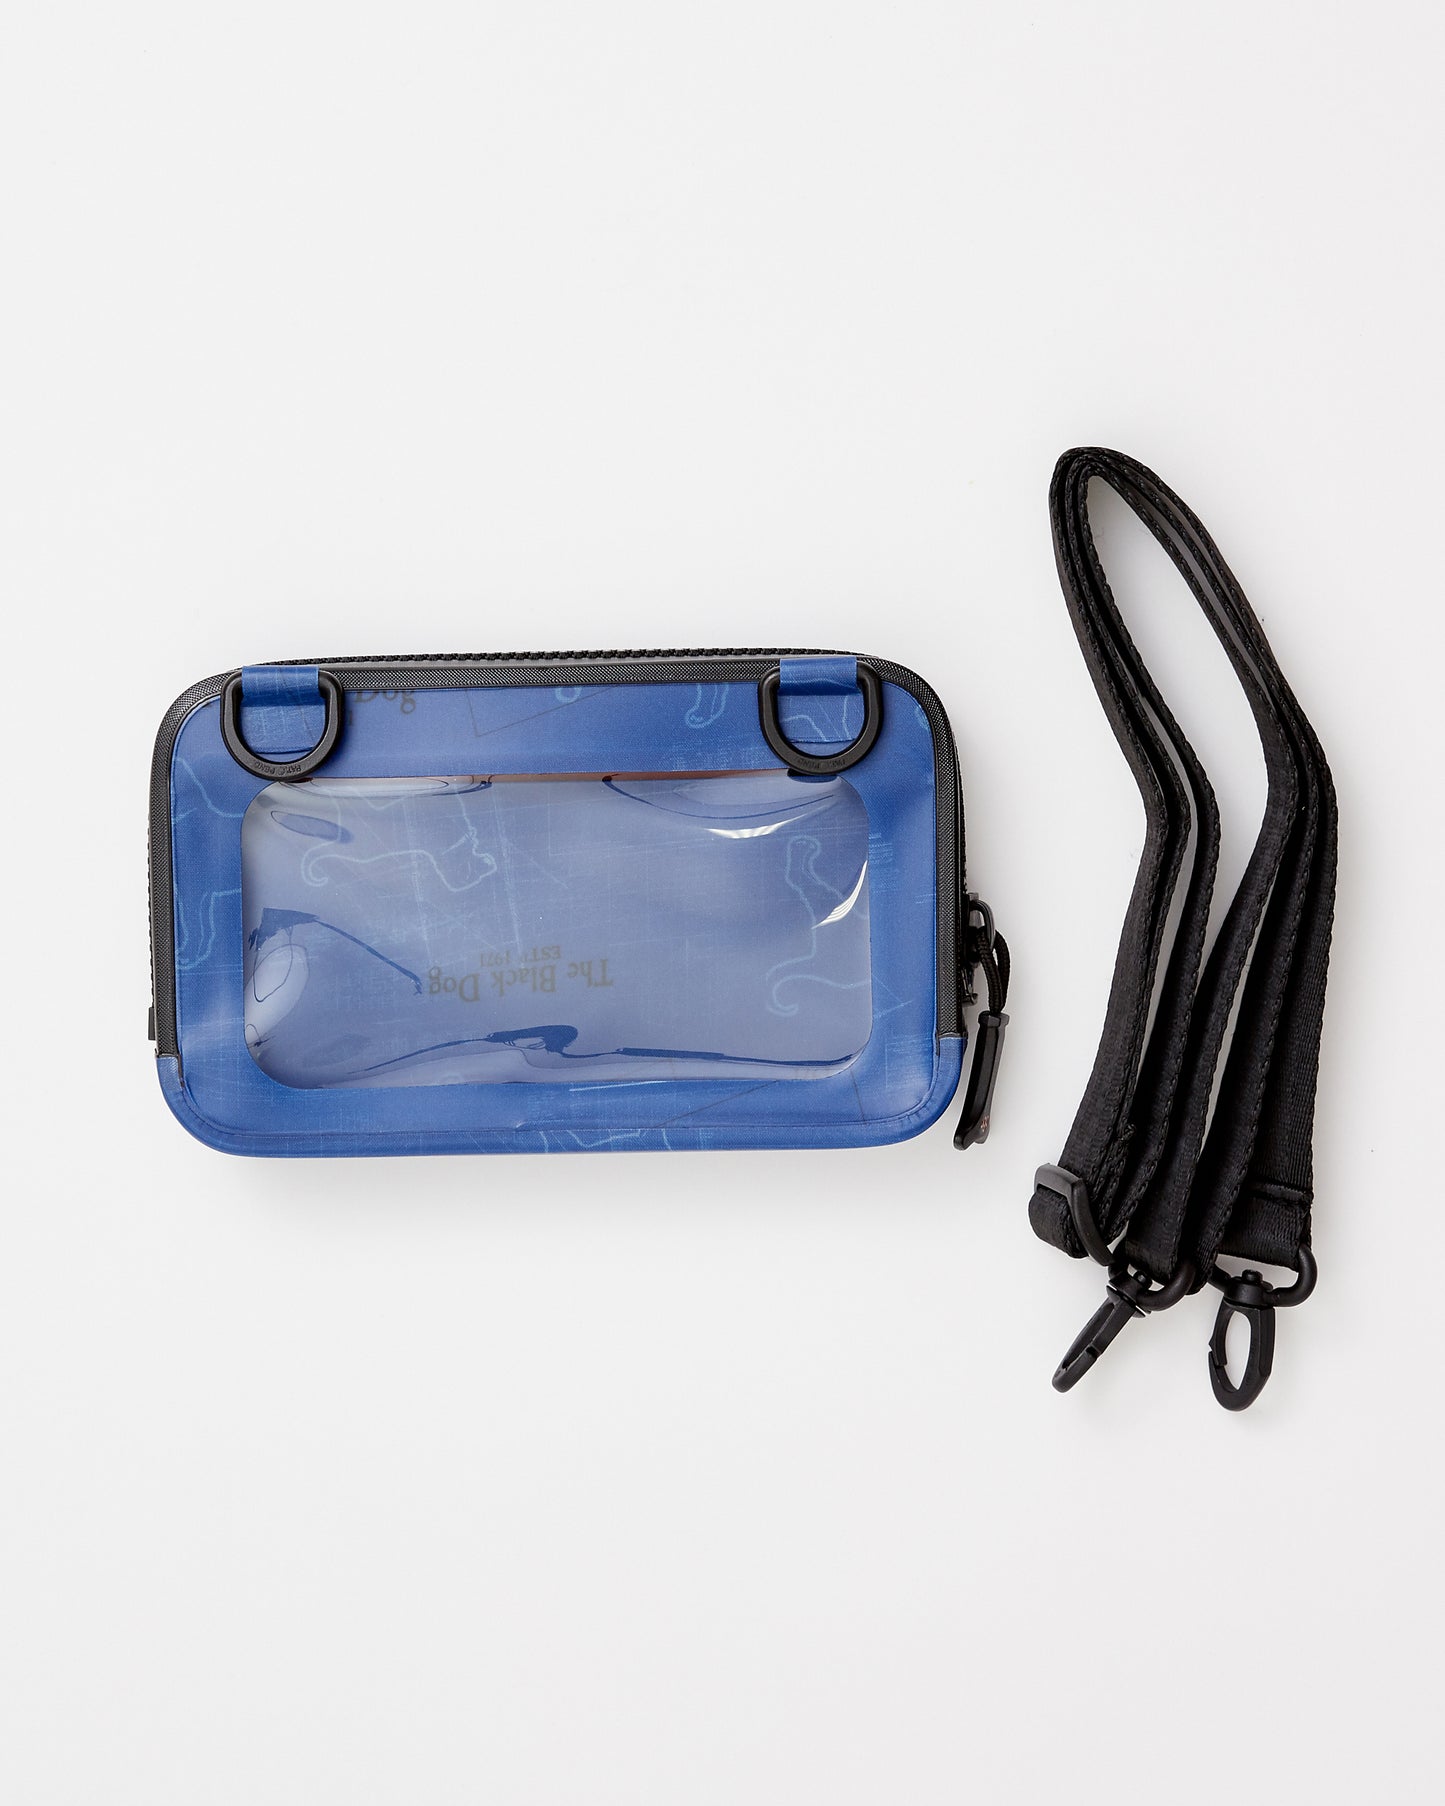 Black Dog Waterproof Phone Case